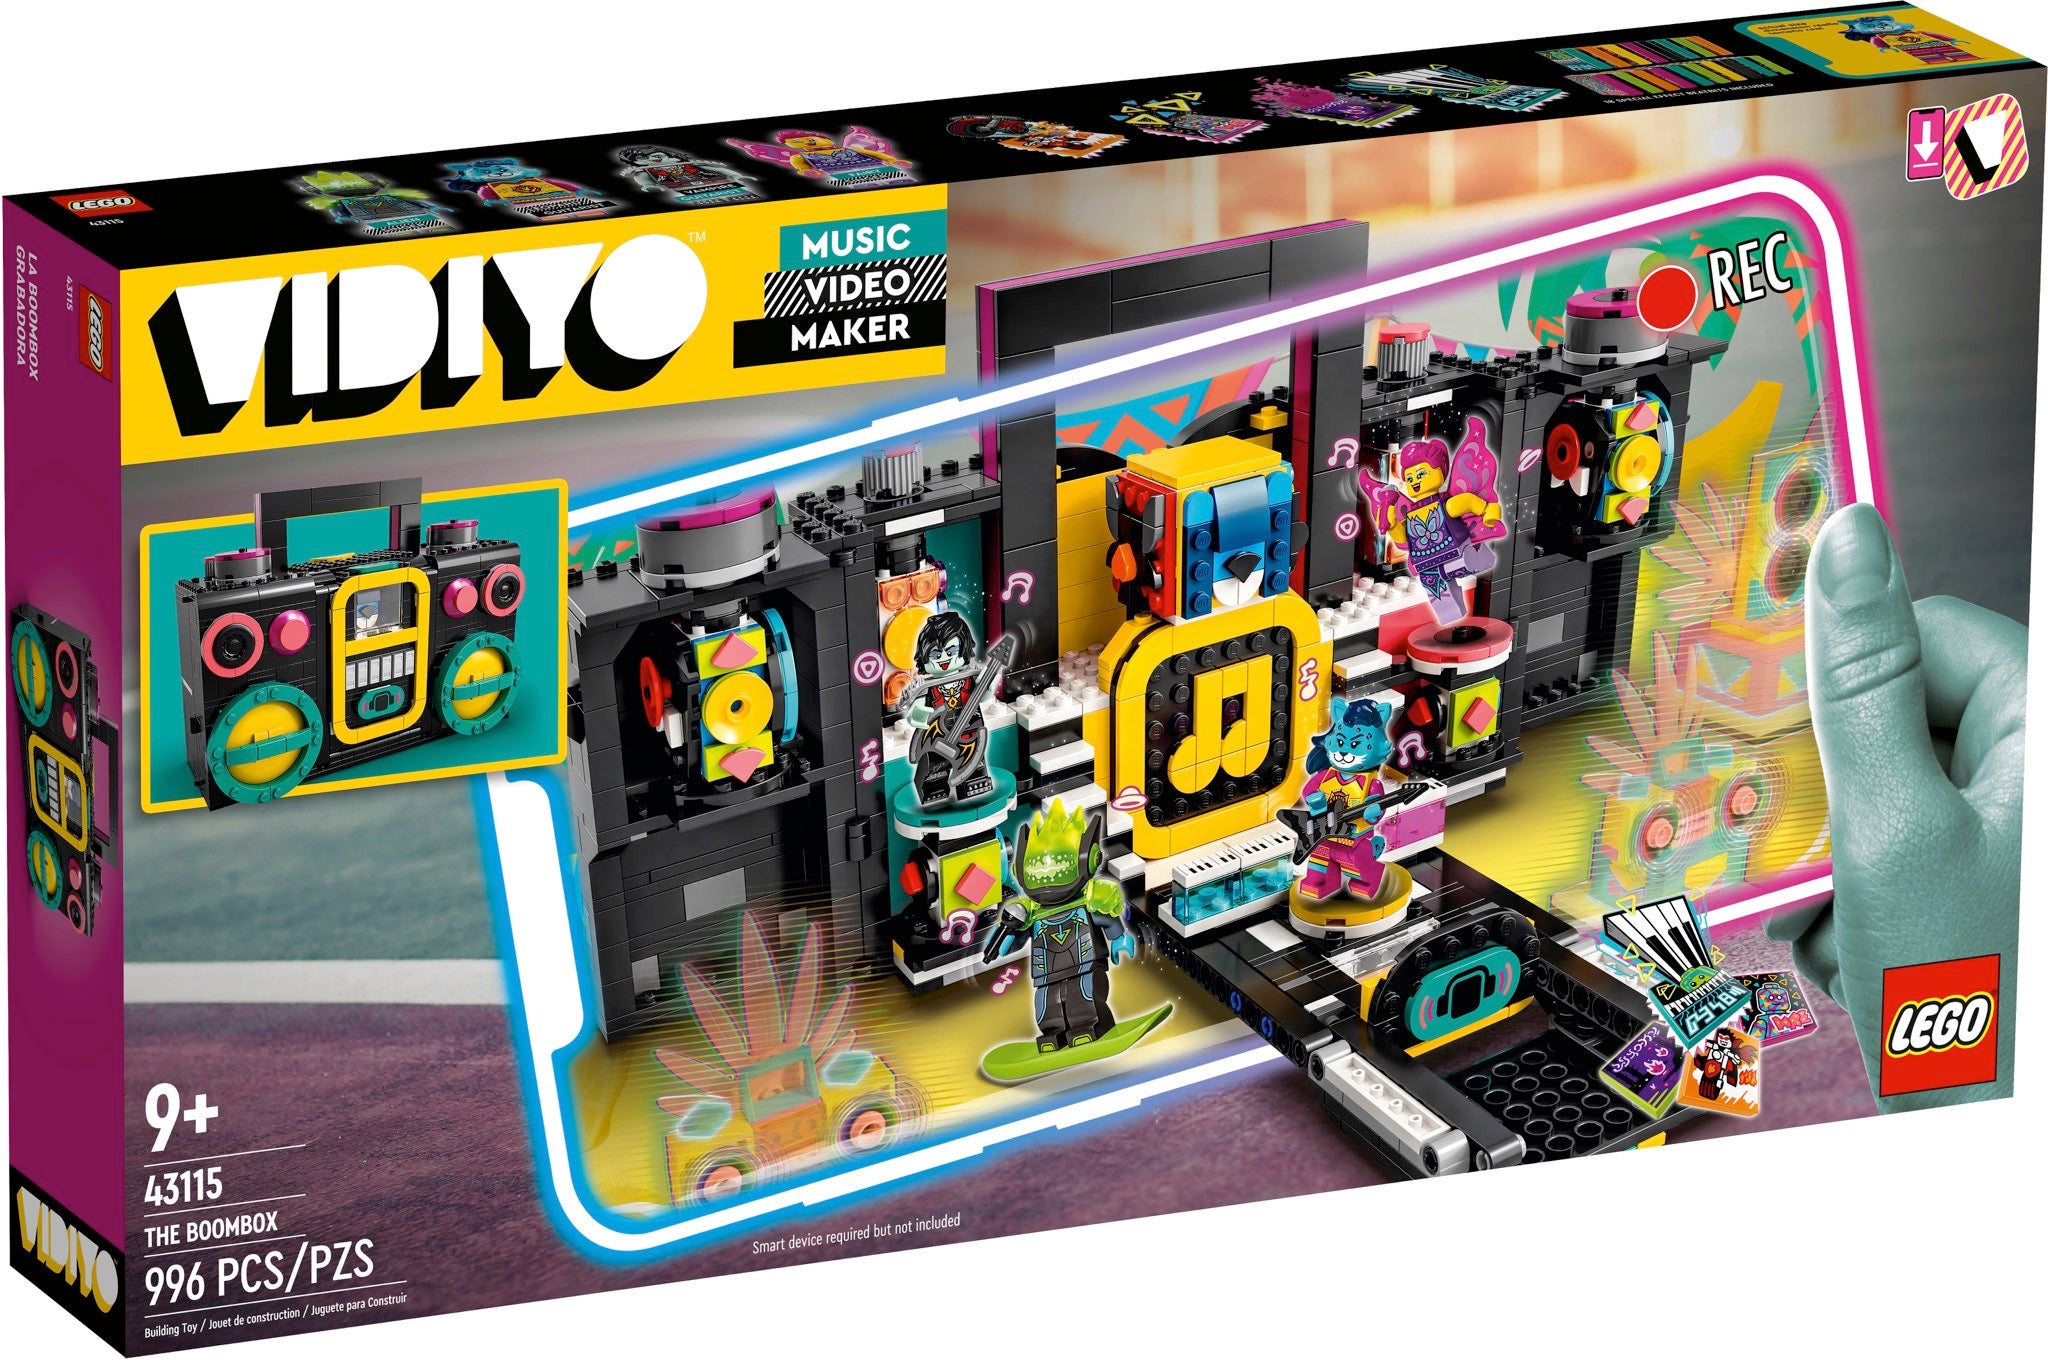 LEGO Vidiyo Boombox (43115) - im GOLDSTIEN.SHOP verfügbar mit Gratisversand ab Schweizer Lager! (5702016911855)